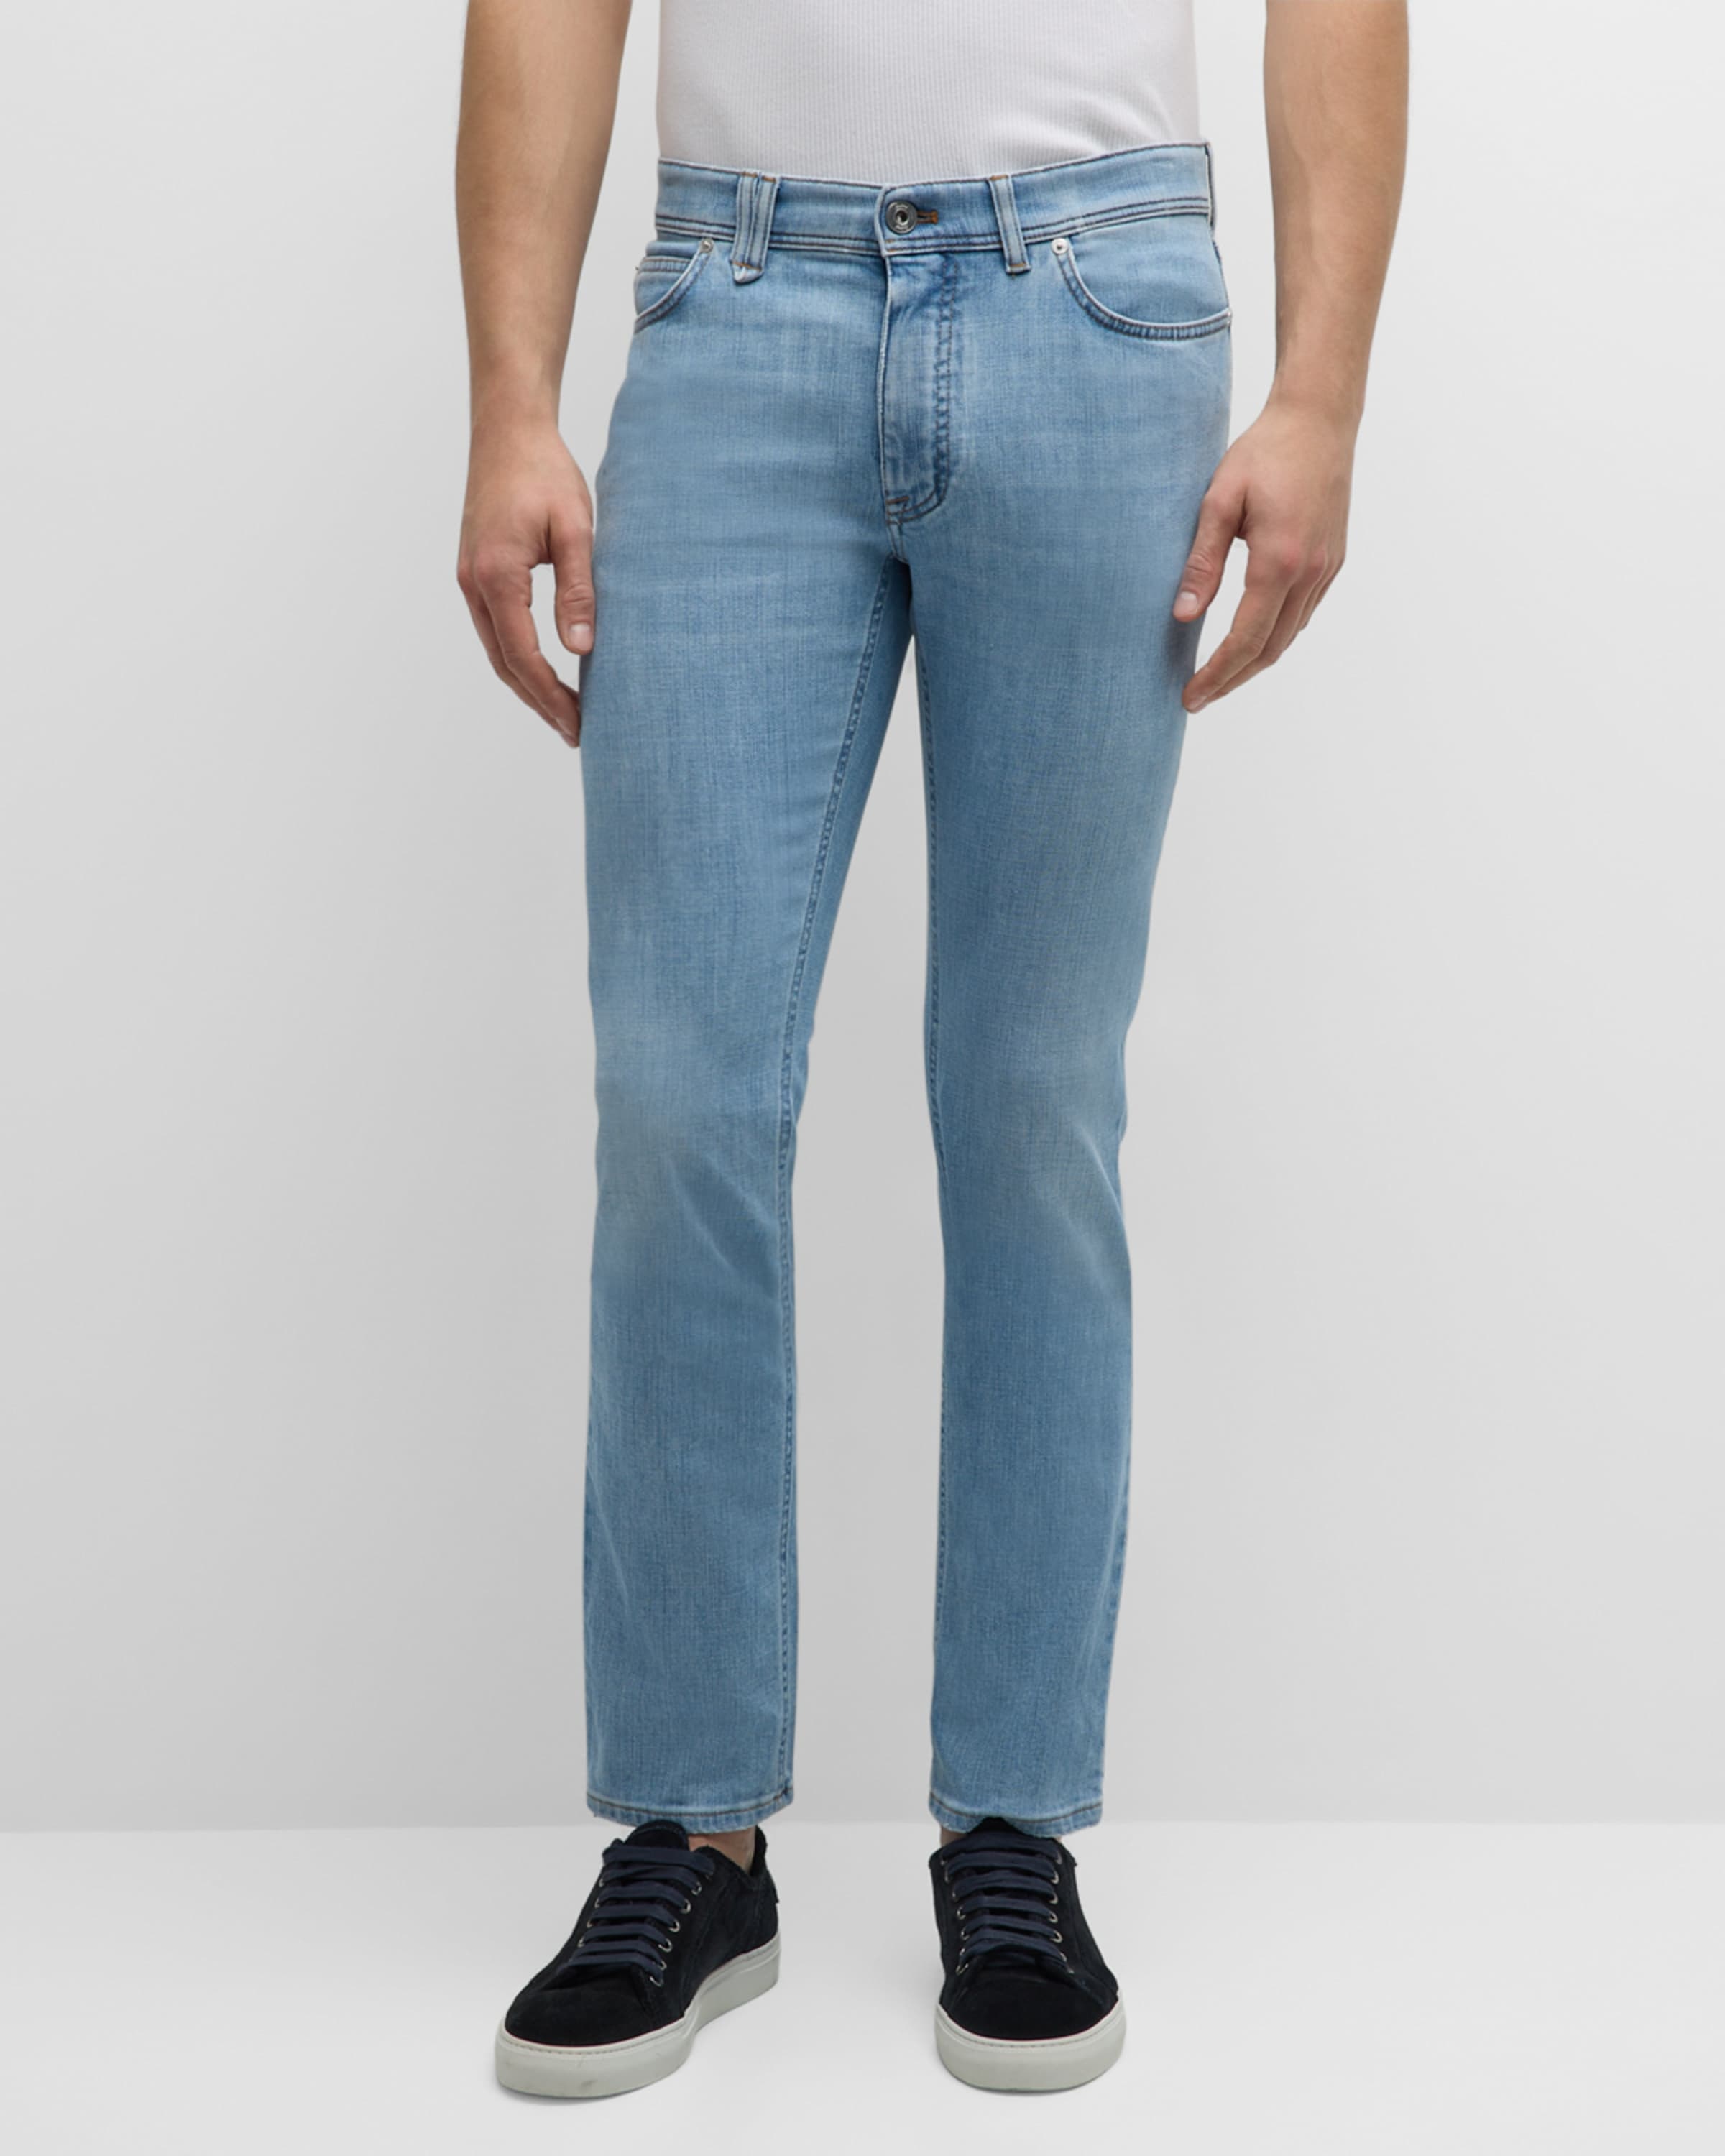 Men's Slim-Fit Light Wash Denim Jeans - 2